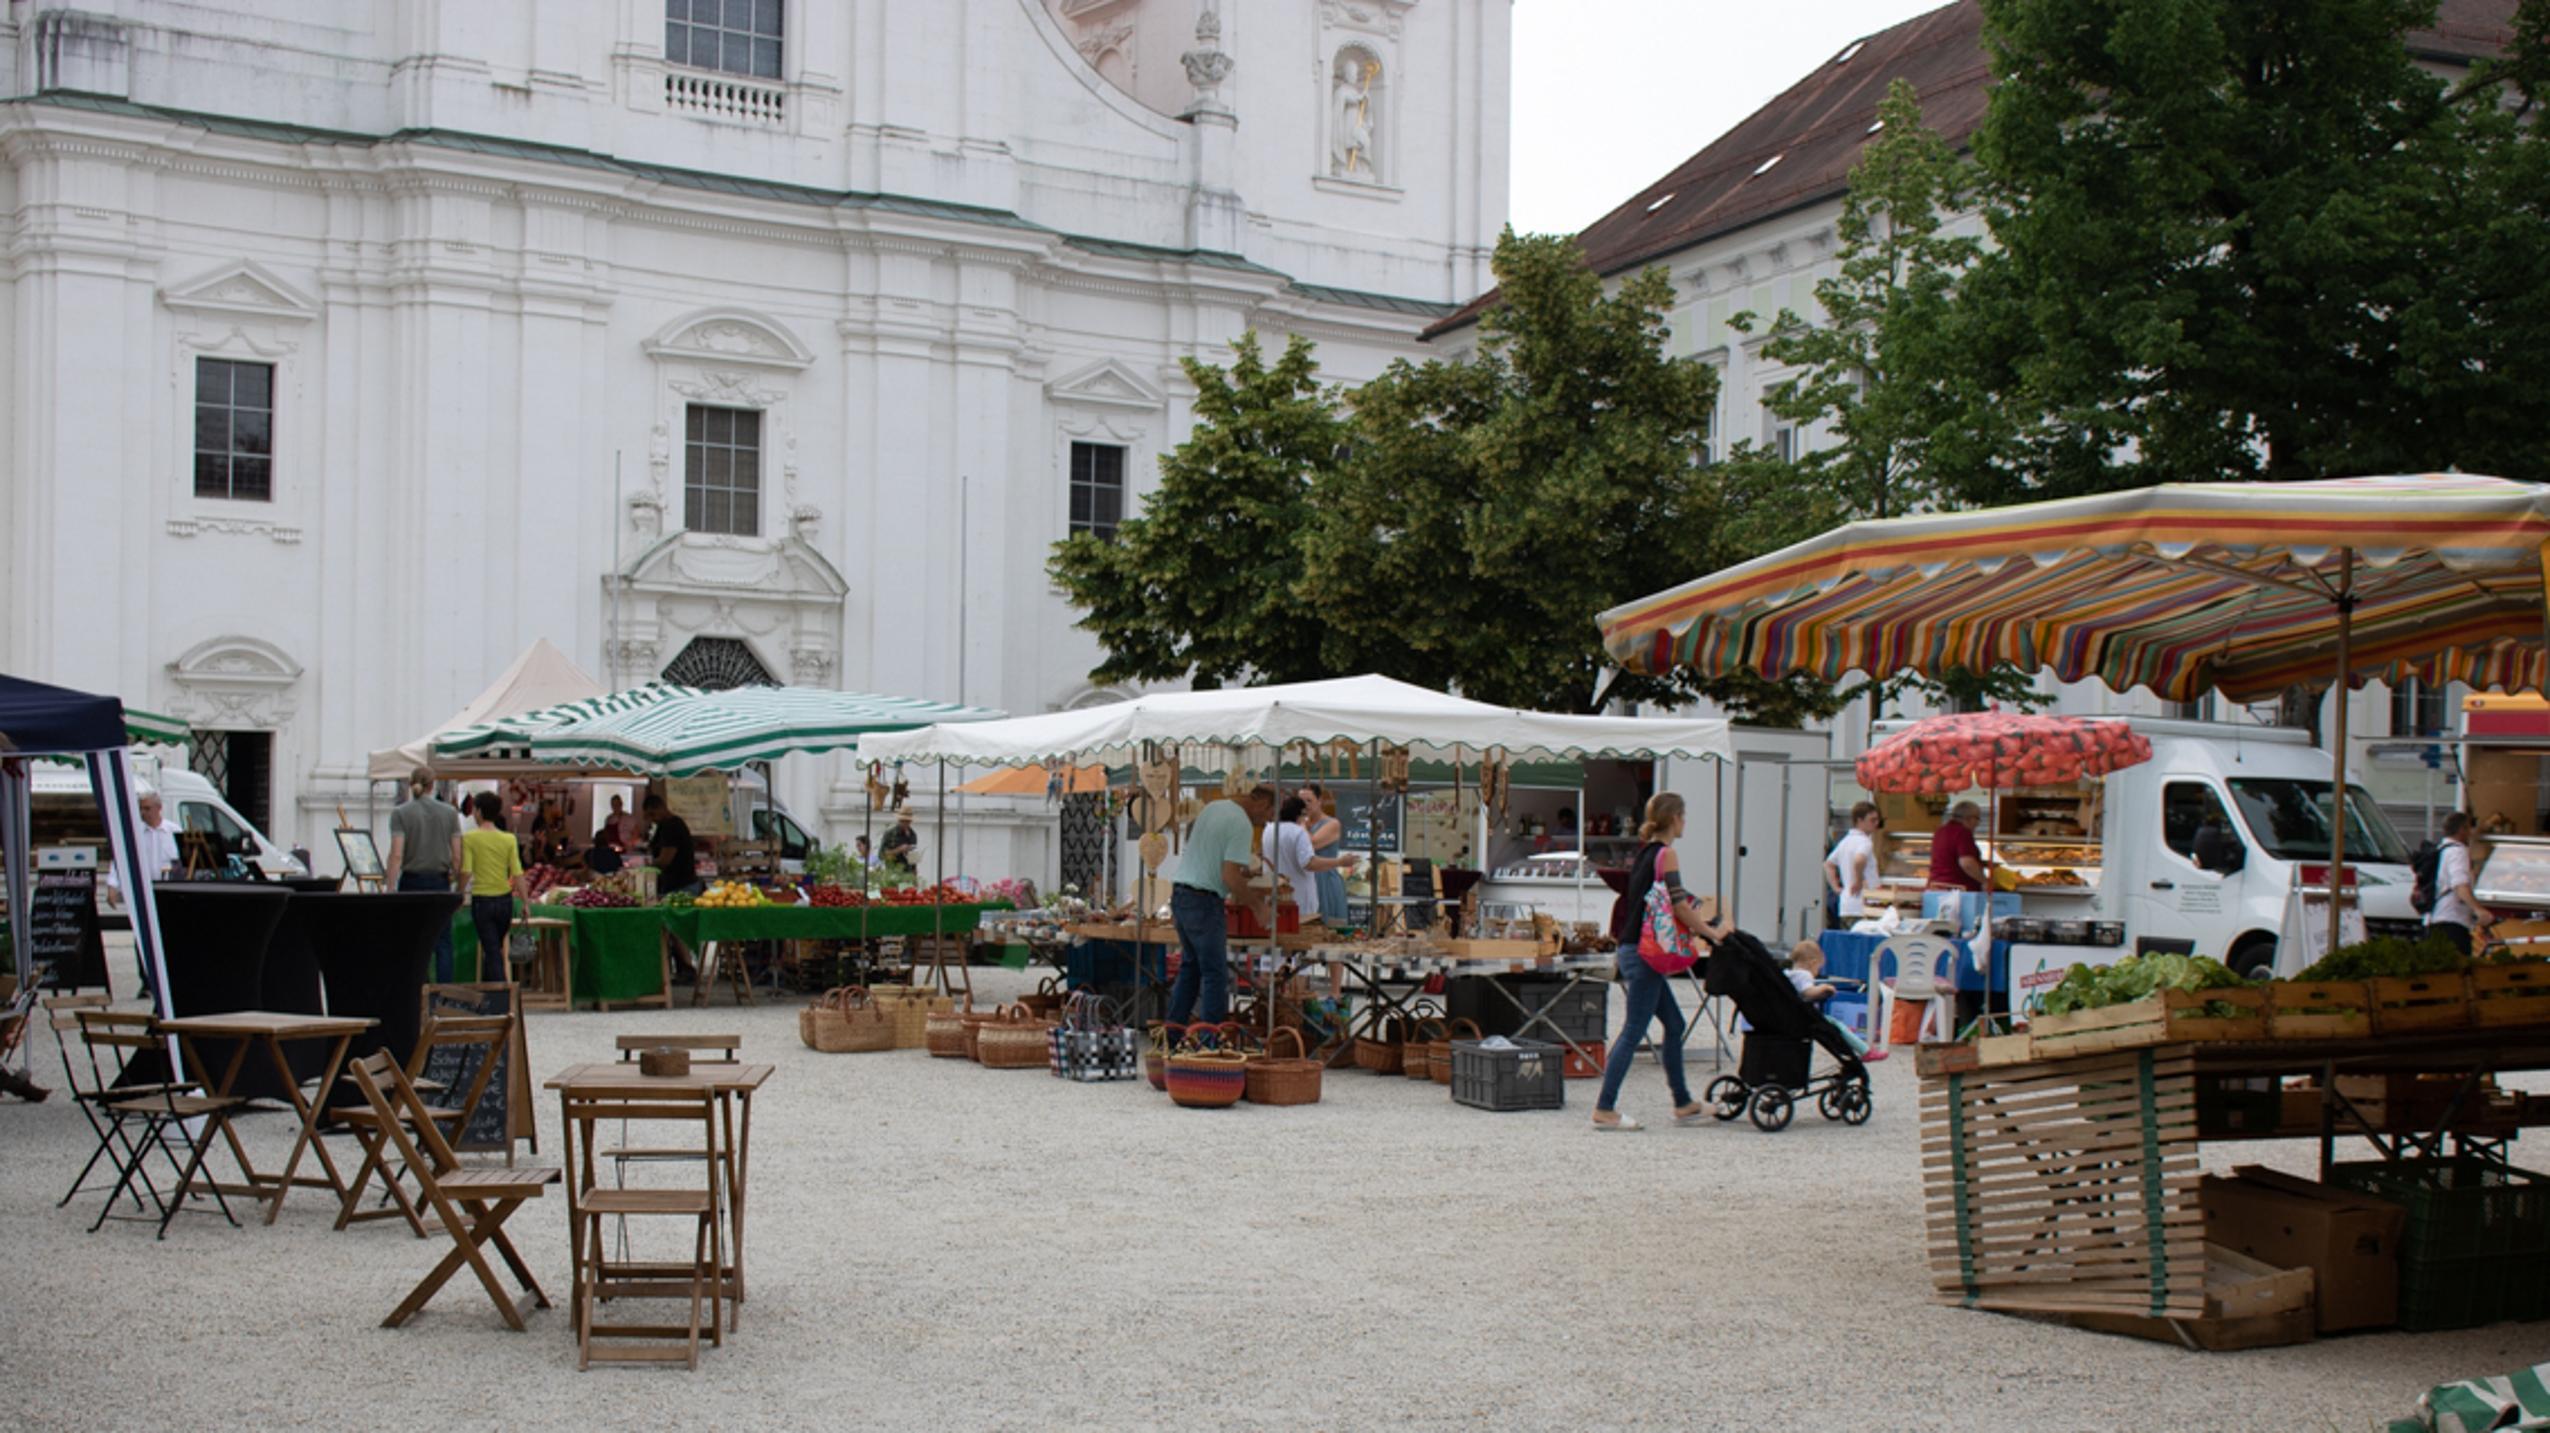 Wochenmarkt Passau Domplatz